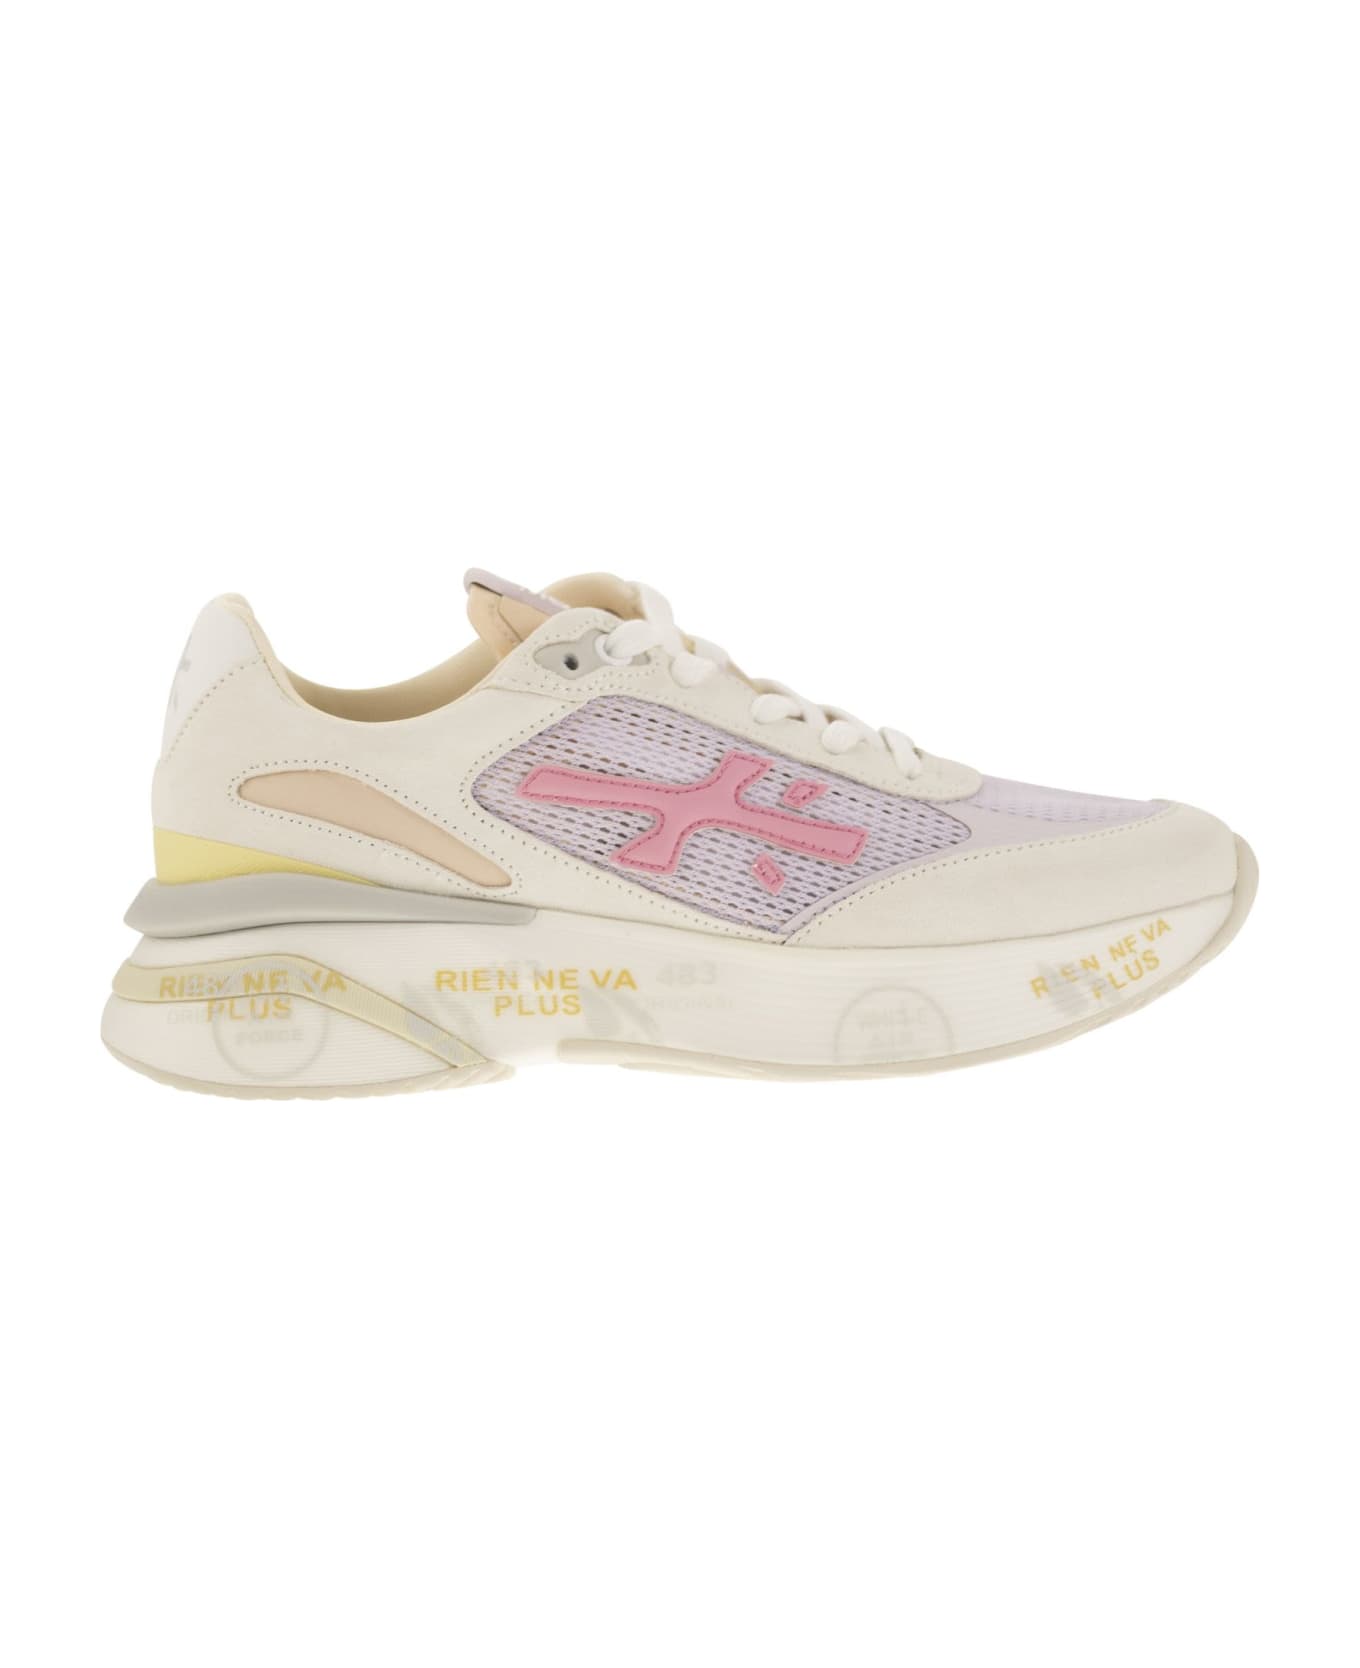 Premiata Moerund Sneakers - White/pink スニーカー